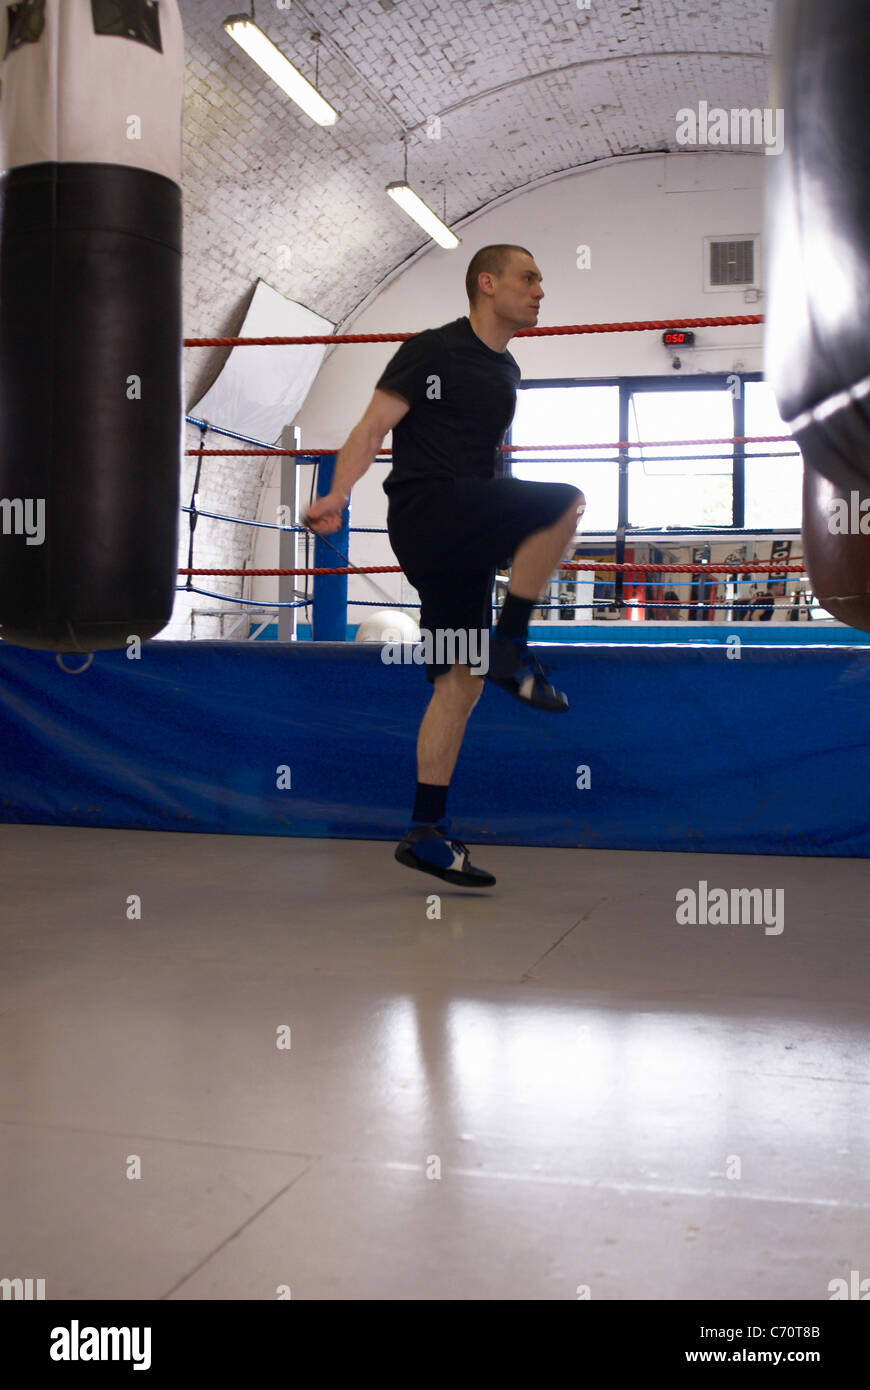 Boxer Seilspringen in Turnhalle Stockfotografie - Alamy